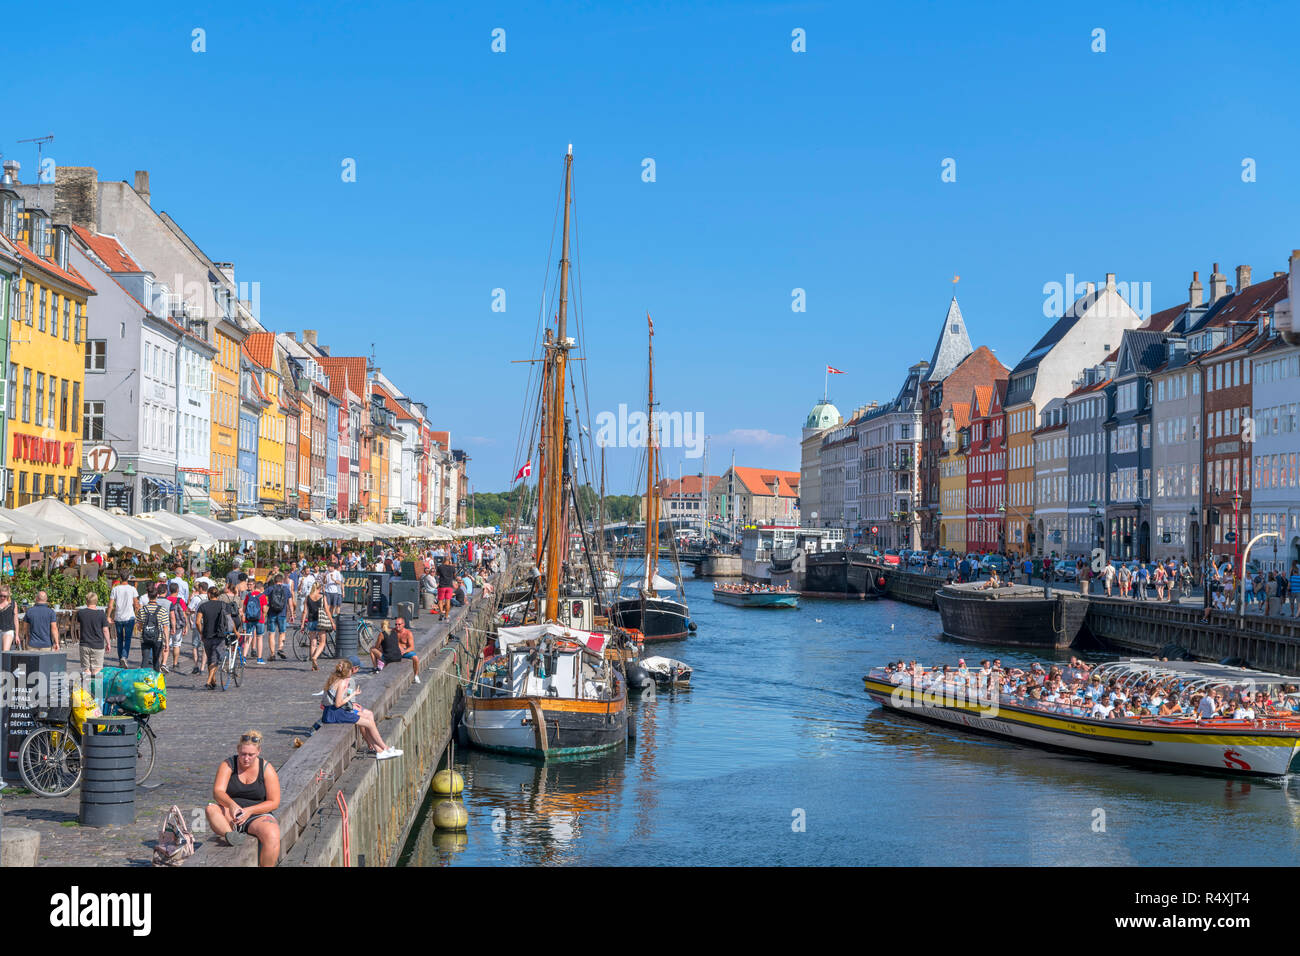 Nyhavn, Copenaghen. Affollato lungomare lungo il canale di Nyhavn, Copenhagen, Danimarca Foto Stock